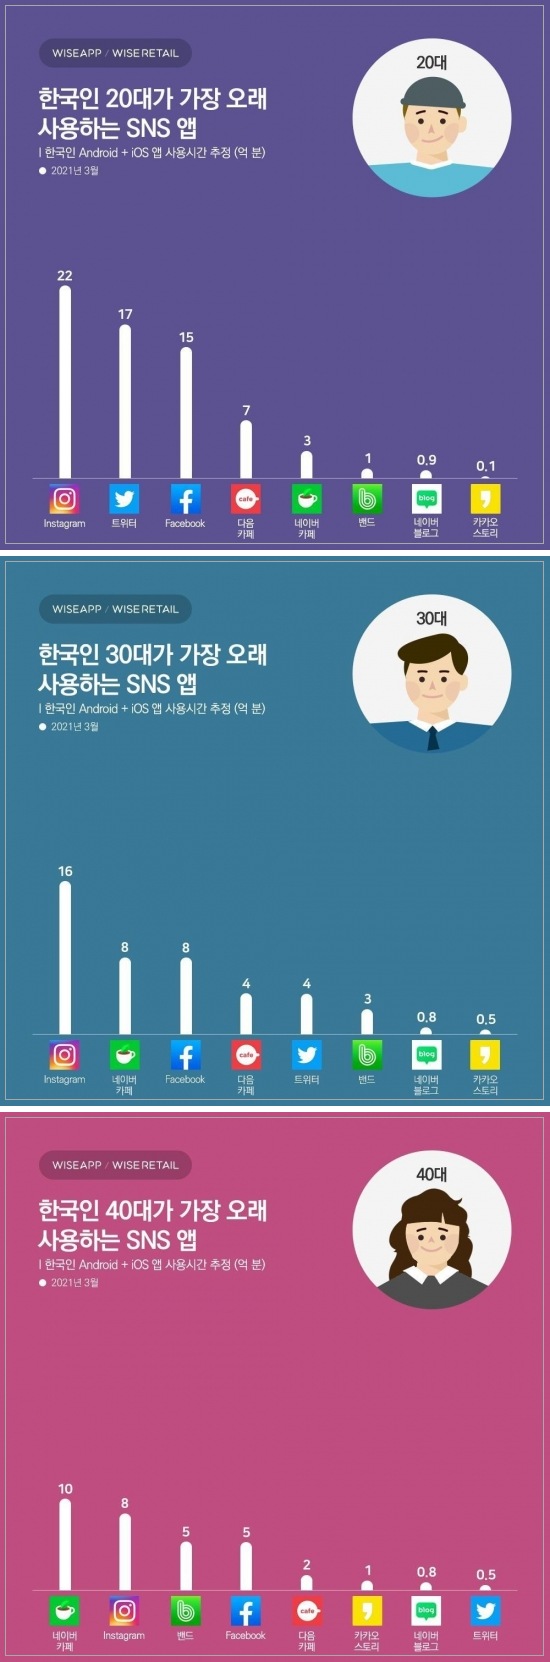 20-40 한국인이 가장 많이 쓰는 SNS